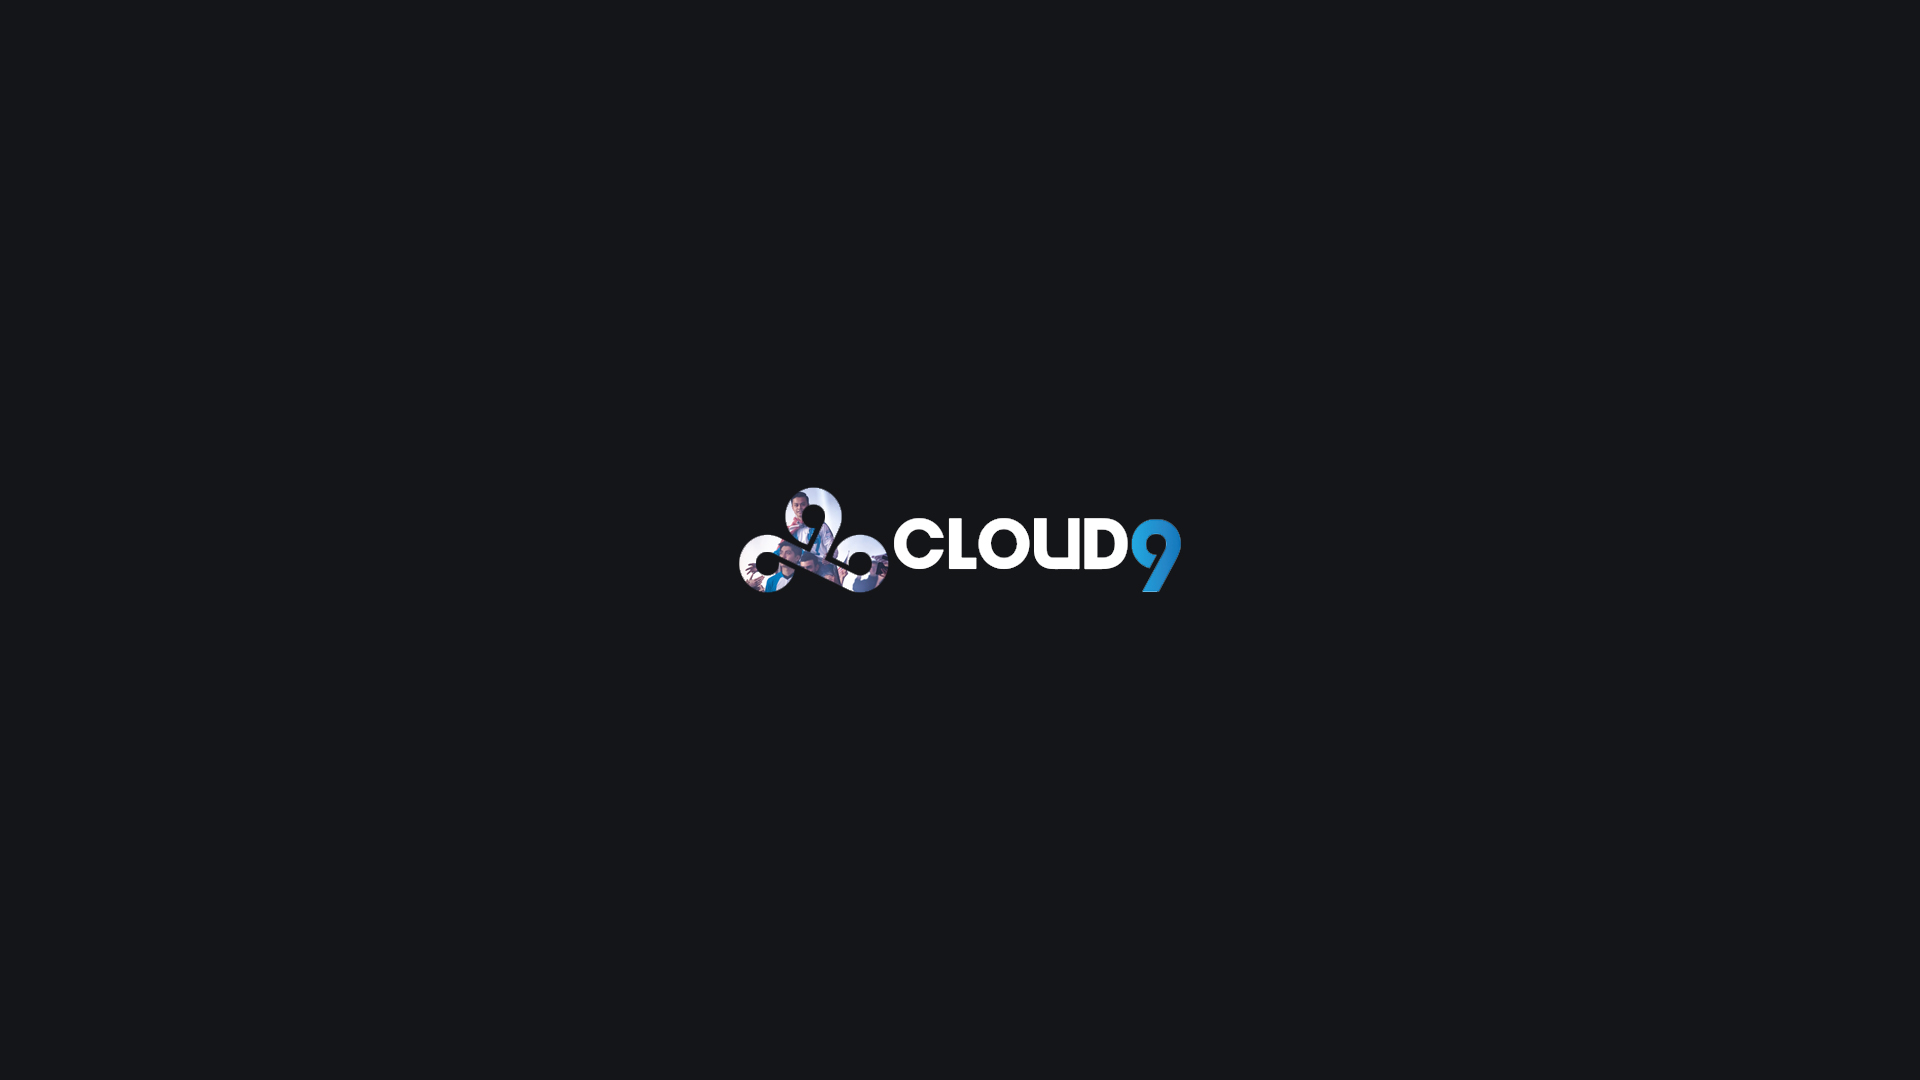 Cloud9 Champions Wallpaper v3 wallpaper